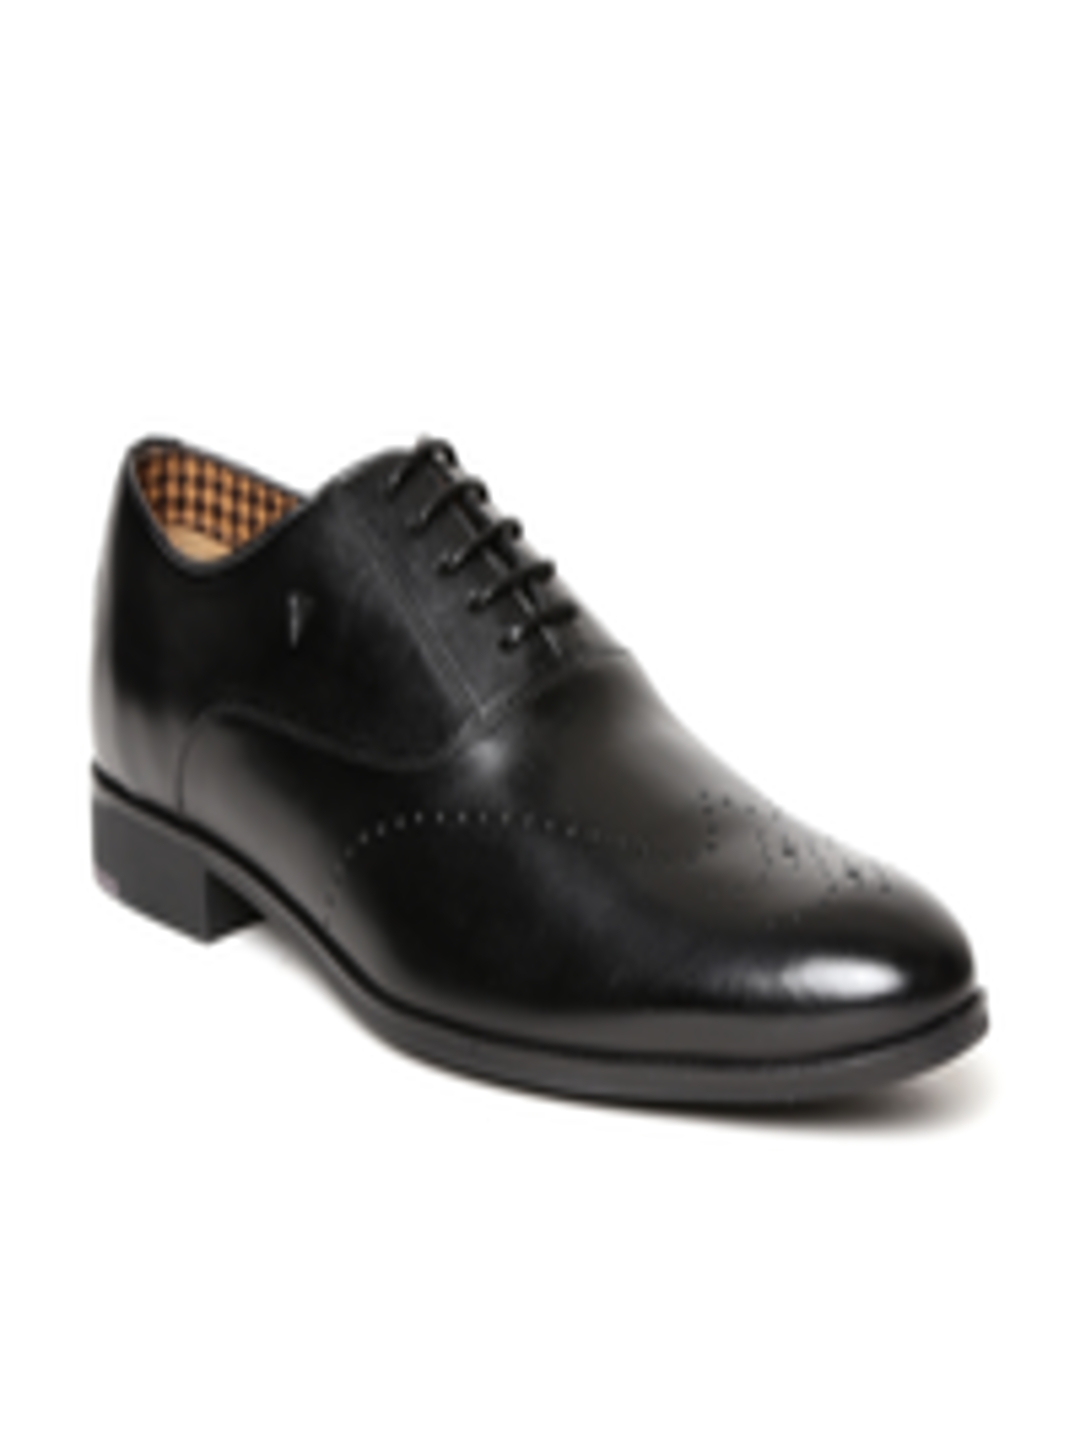 Buy Van Heusen Men Black Leather Semiformal Oxfords - Formal Shoes for ...